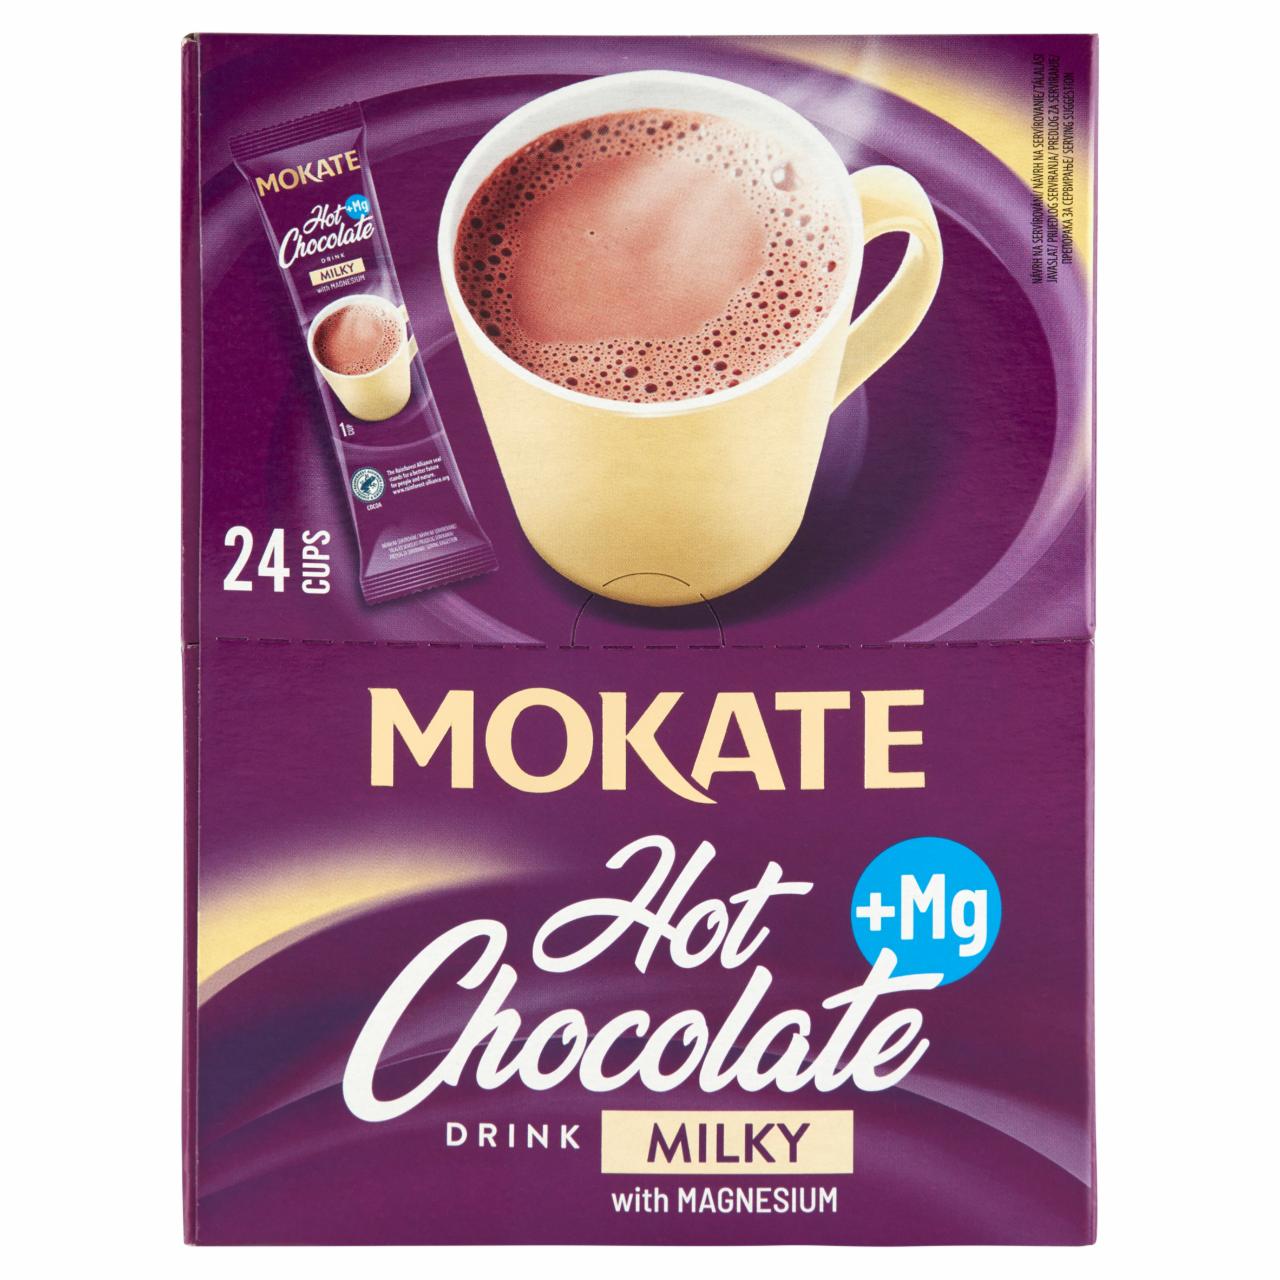 Képek - Mokate tejes ízű instant csokoládé ital magnézium hozzáadásával 24 x 18 g (432 g)